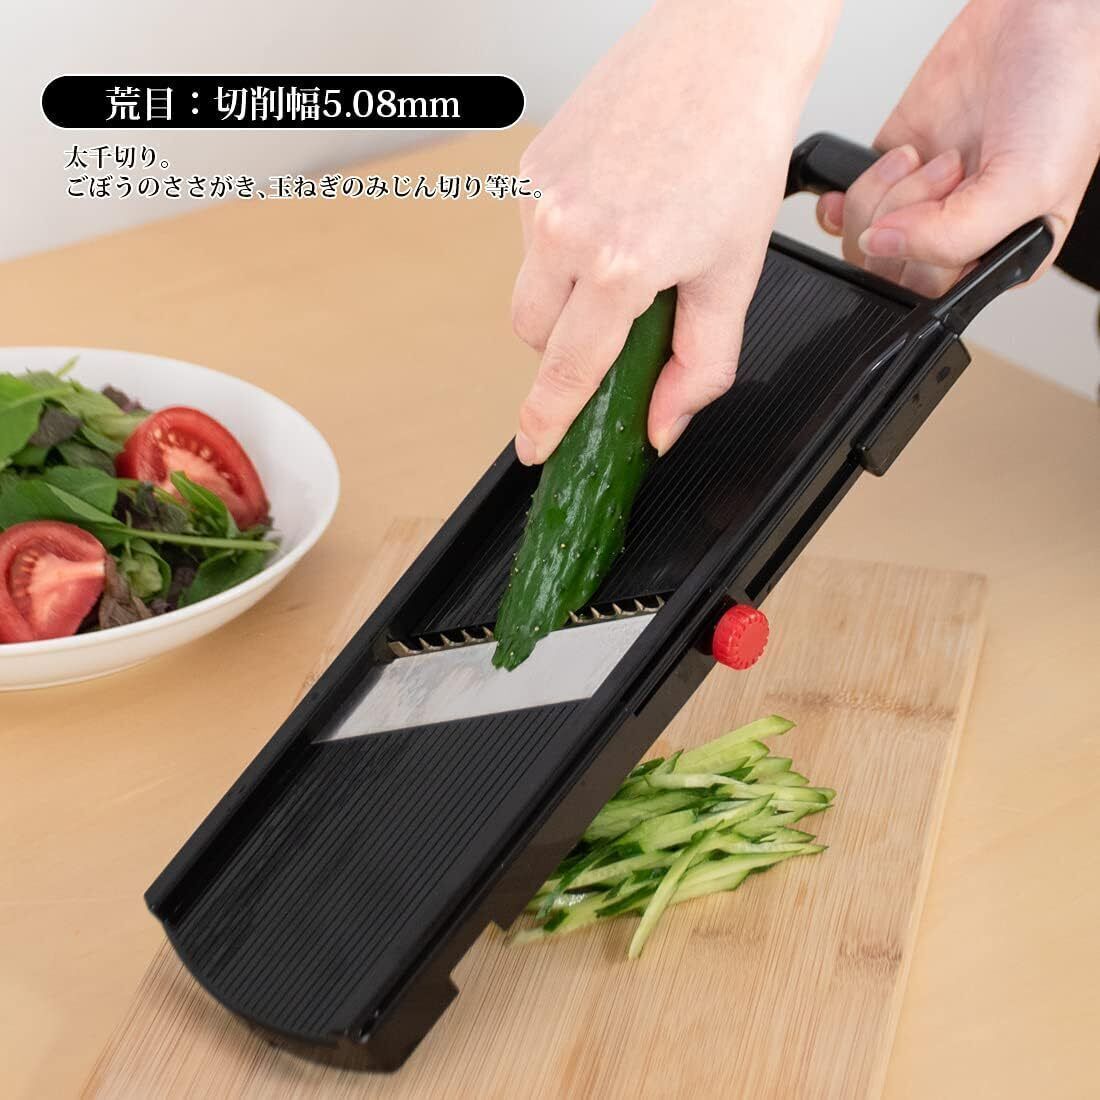 Shimomura Stainless Steel Mini Vegetable Slicer